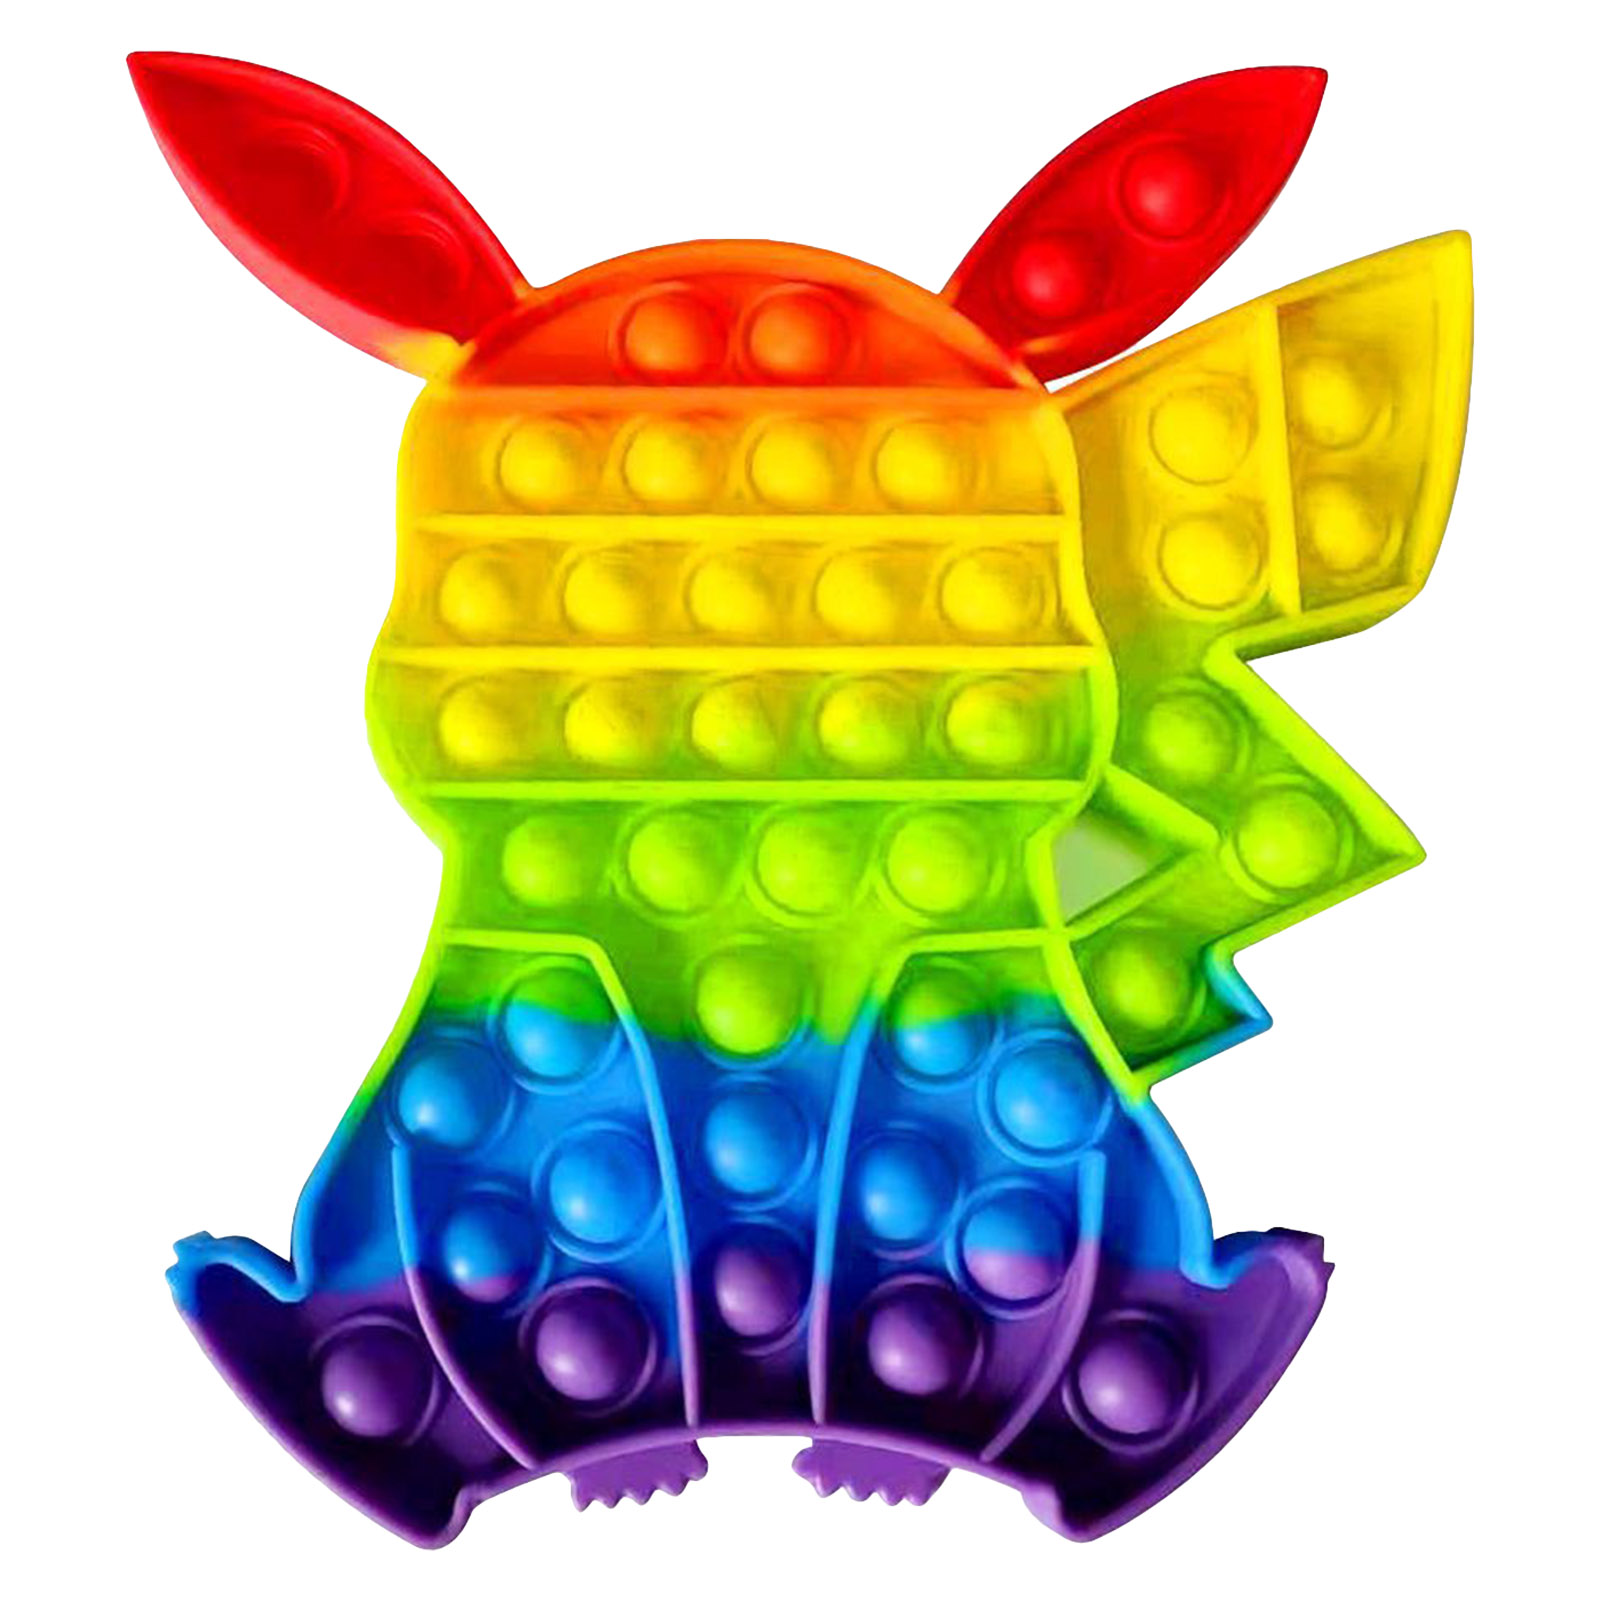 Regenbogen Push Es Blase Anti-Stress Zappeln Spielzeug Autismus ADHS Stressabbau 